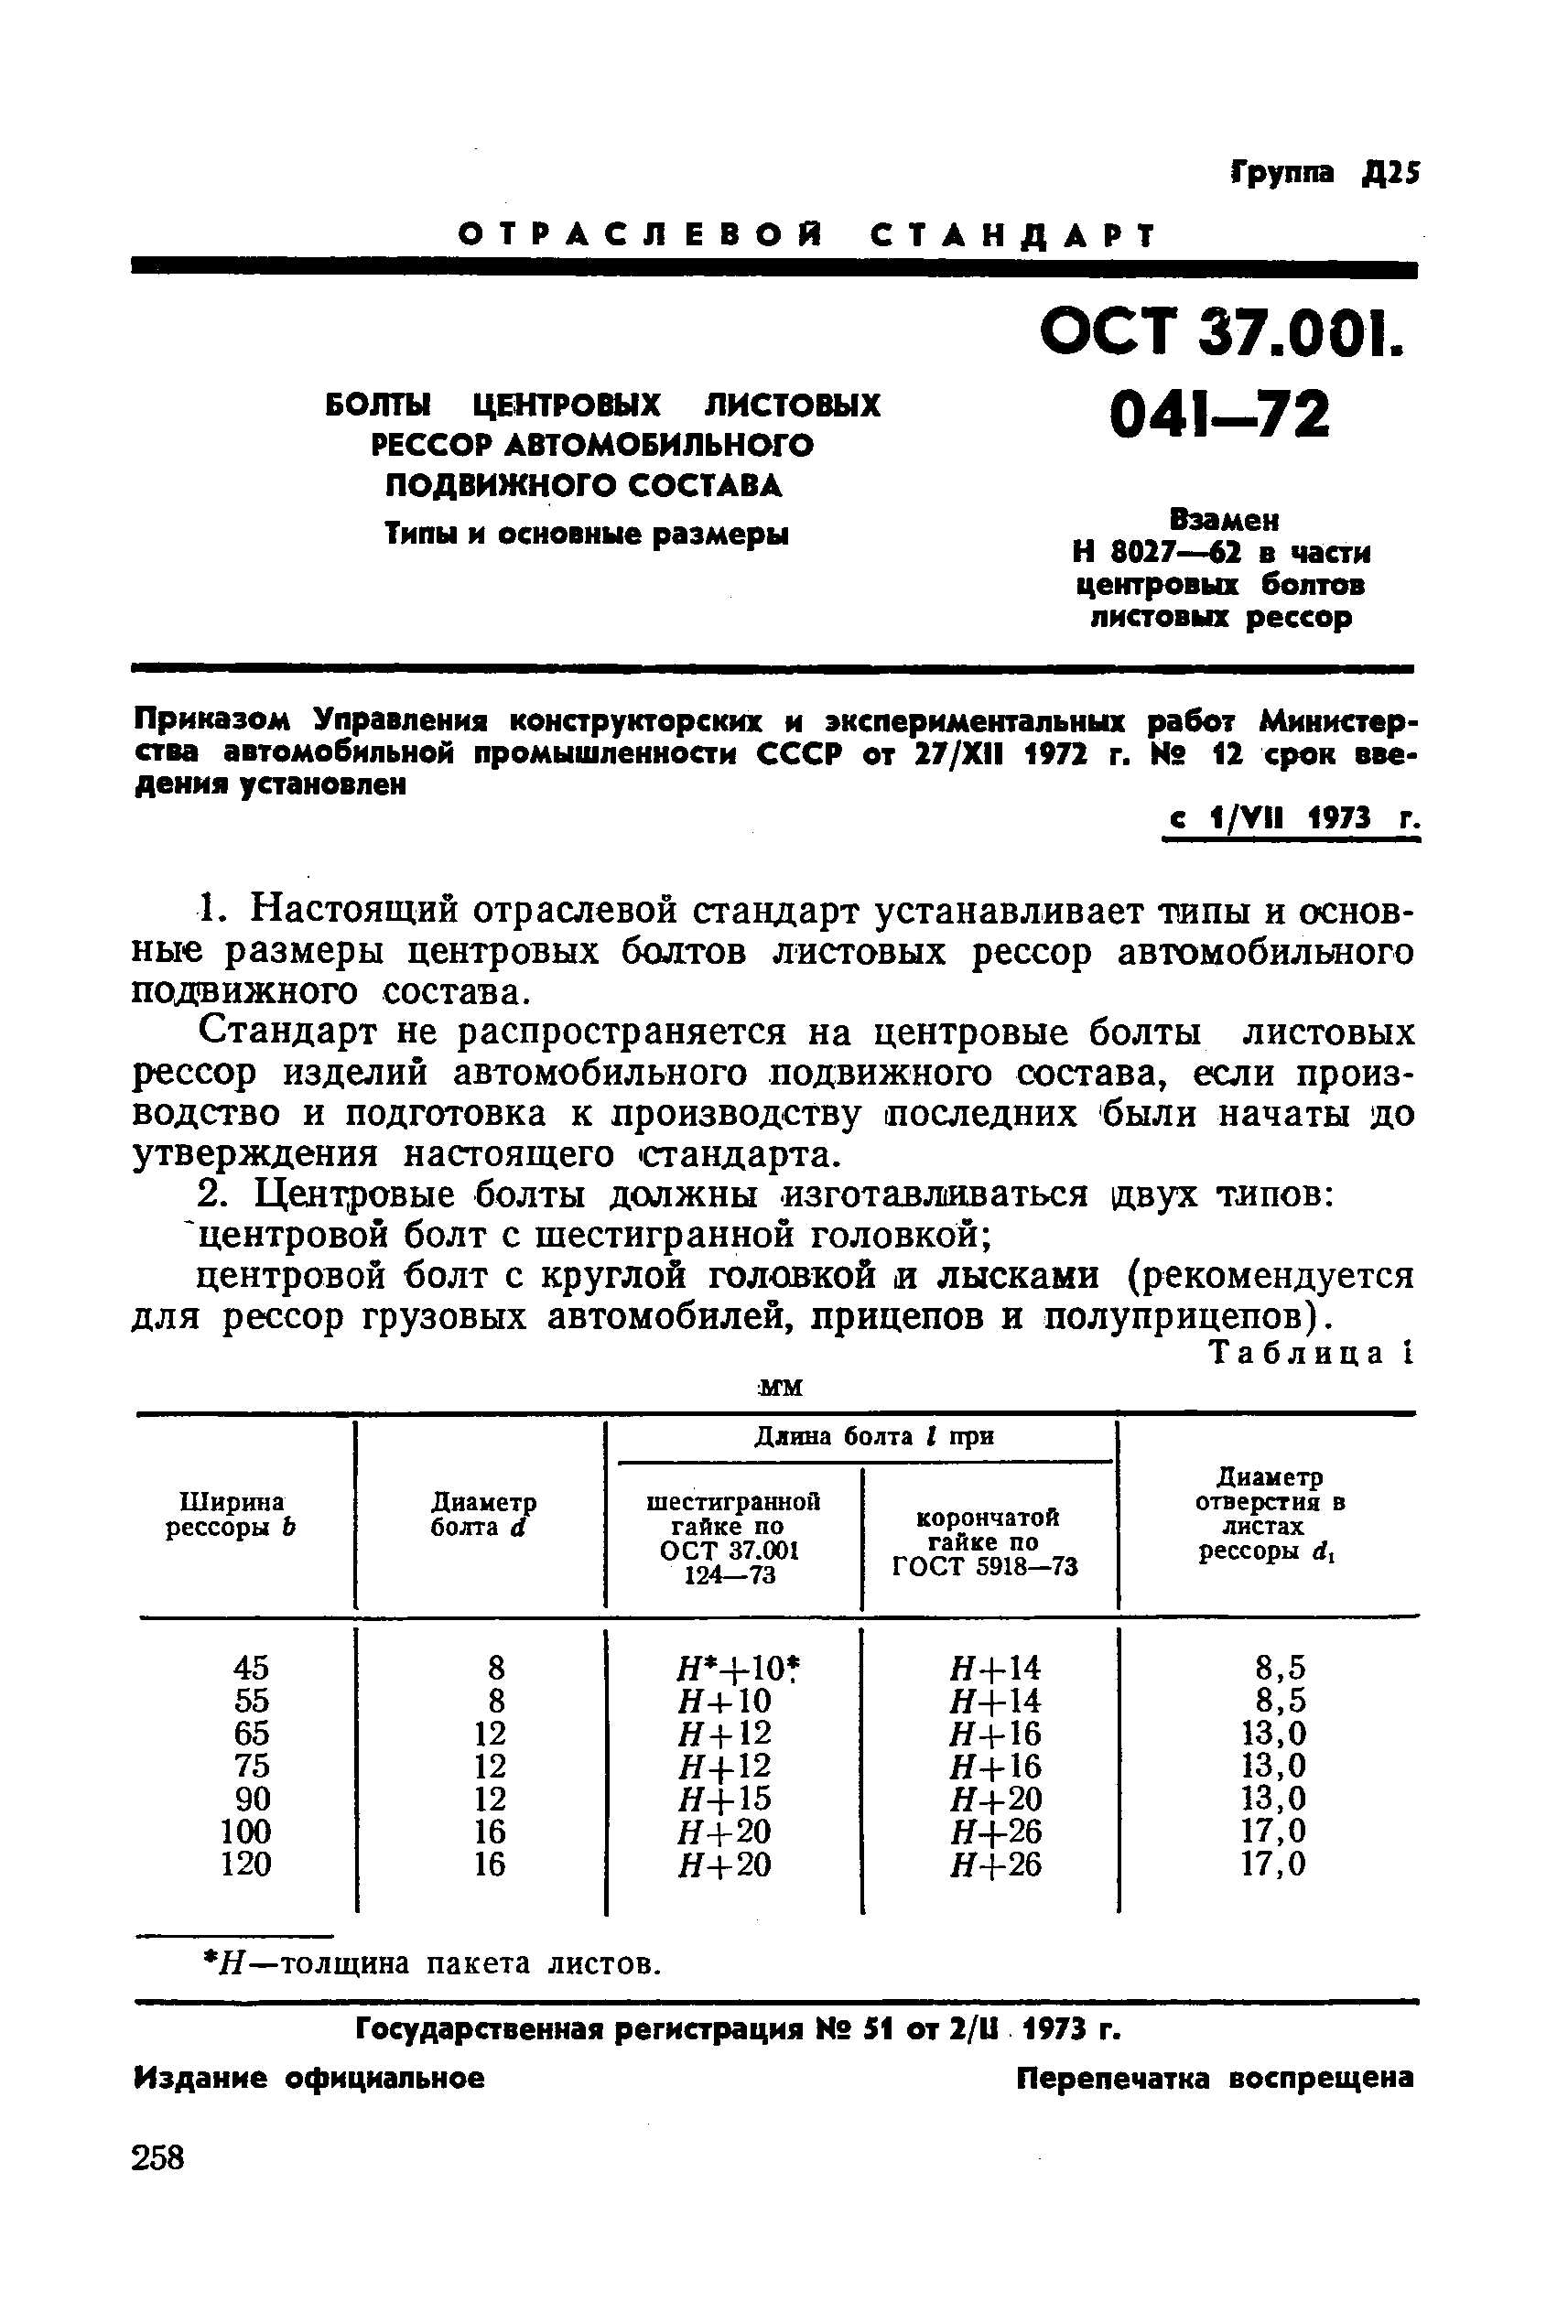 ОСТ 37.001.041-72